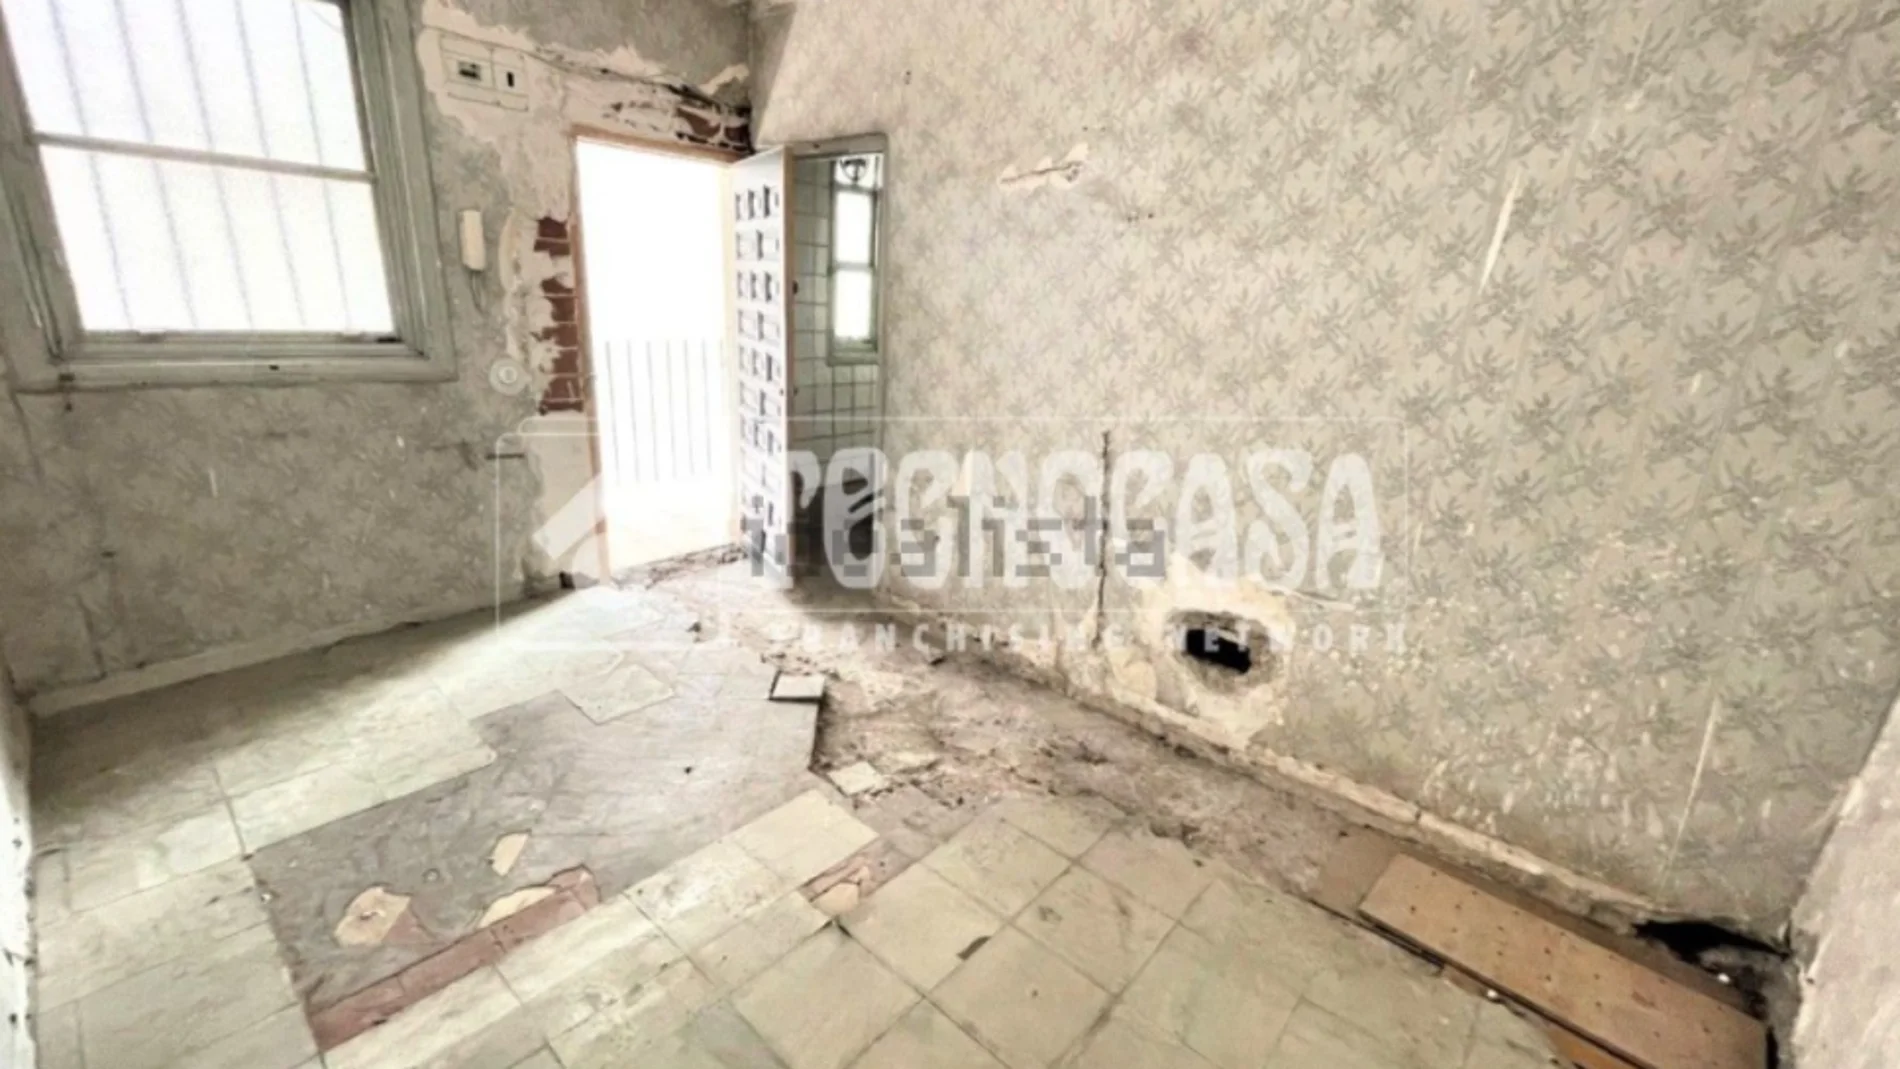 Un piso en ruinas por 89.900 euros, el polémico anuncio de Idealista sobre la venta de pisos en Madrid